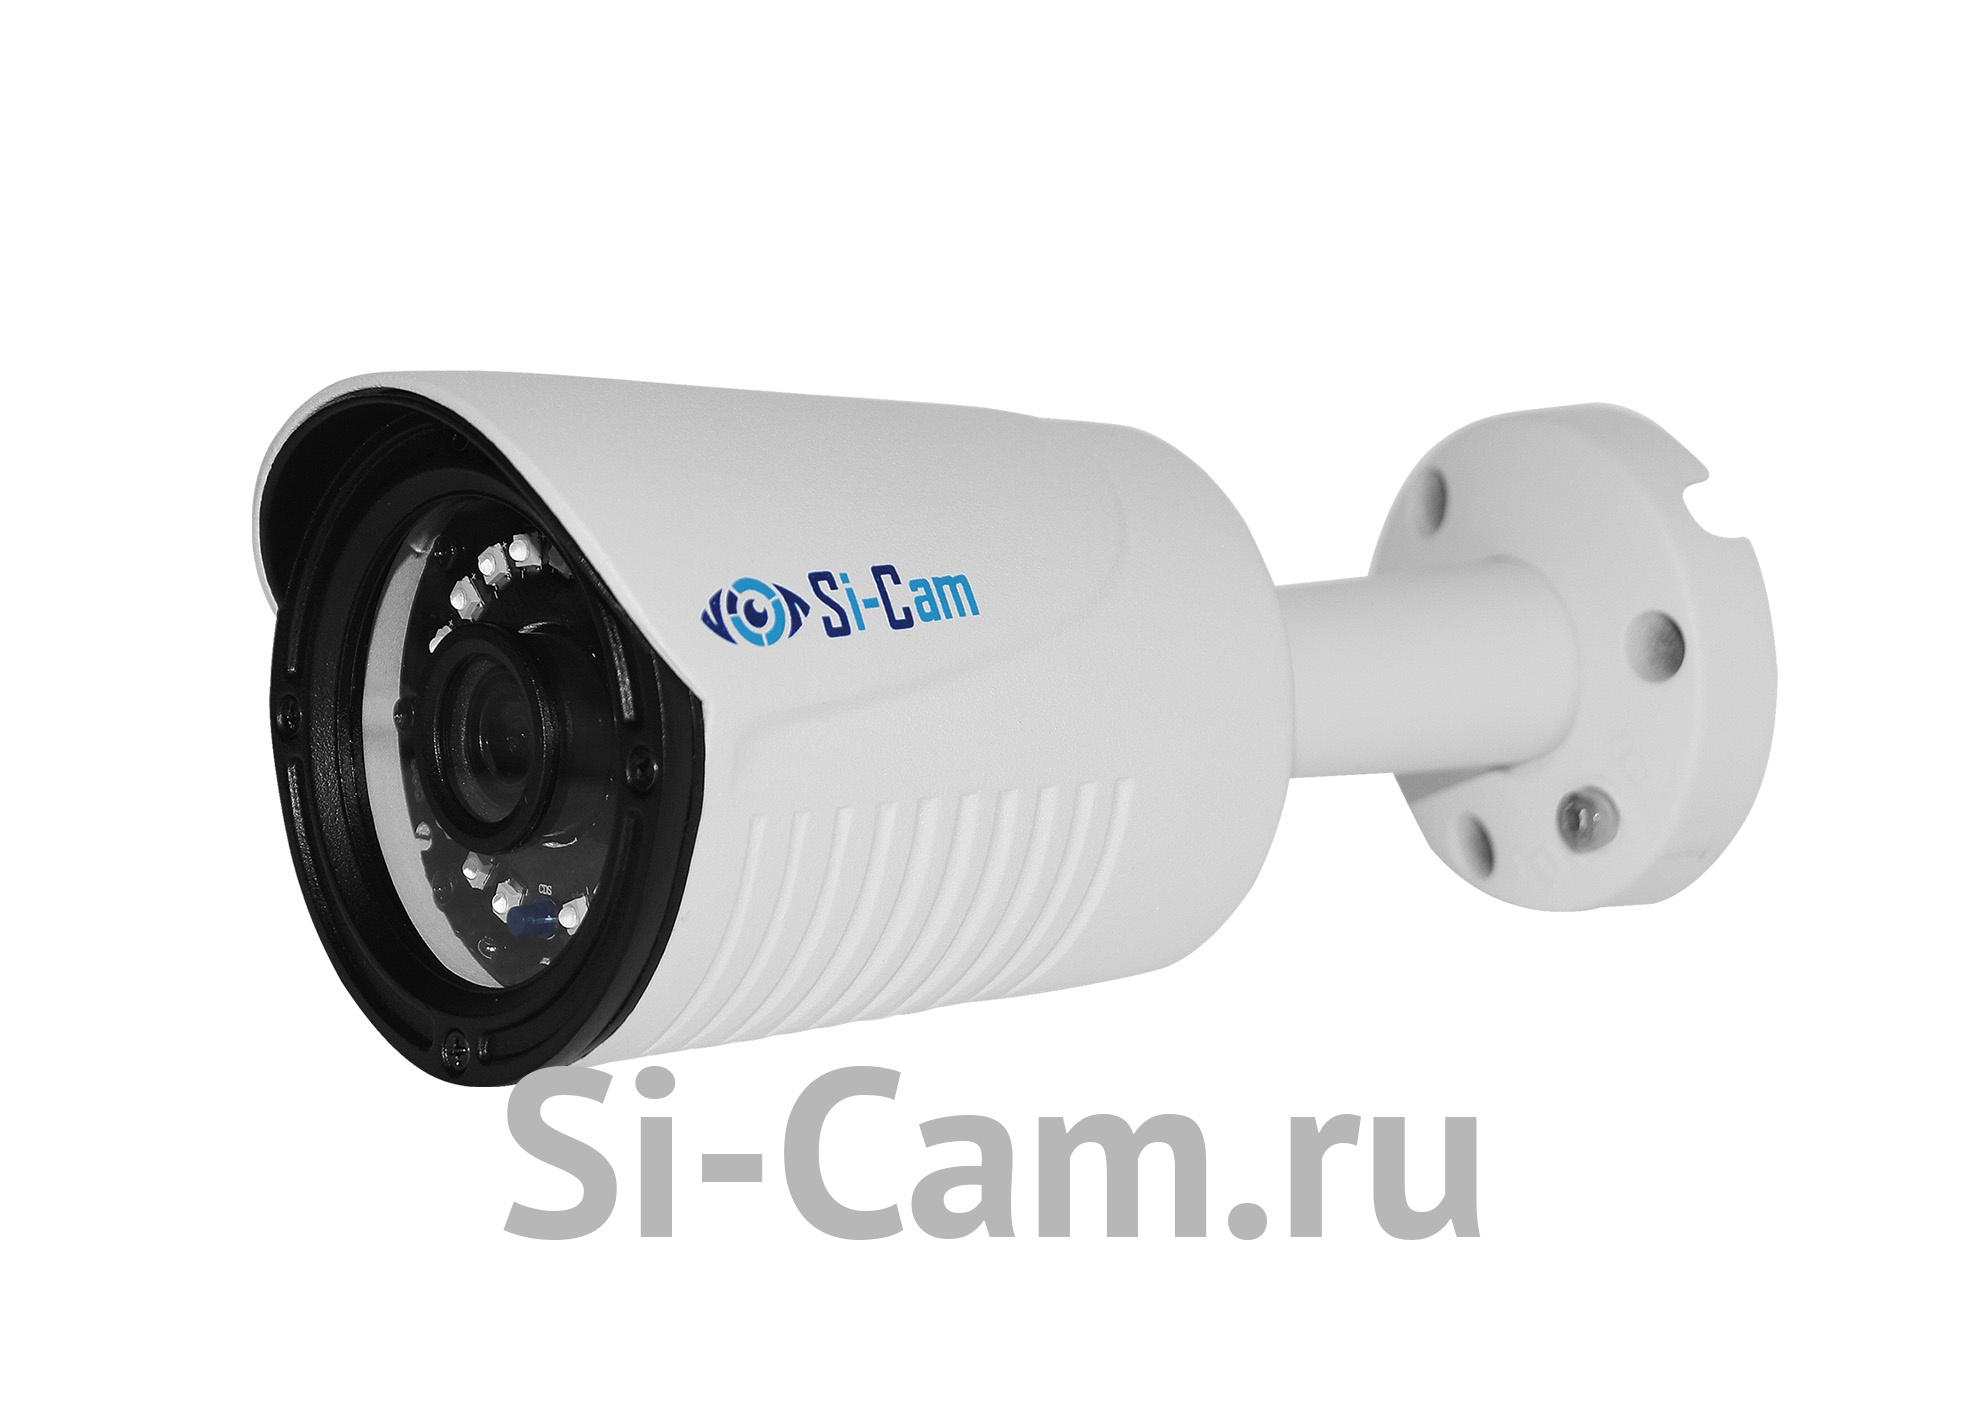 SC-DSS401F IR - Уличная цилиндрическая цифровая видеокамера 2/3/4 Mpx с фиксированным объективом (2.5F, белый, LED)